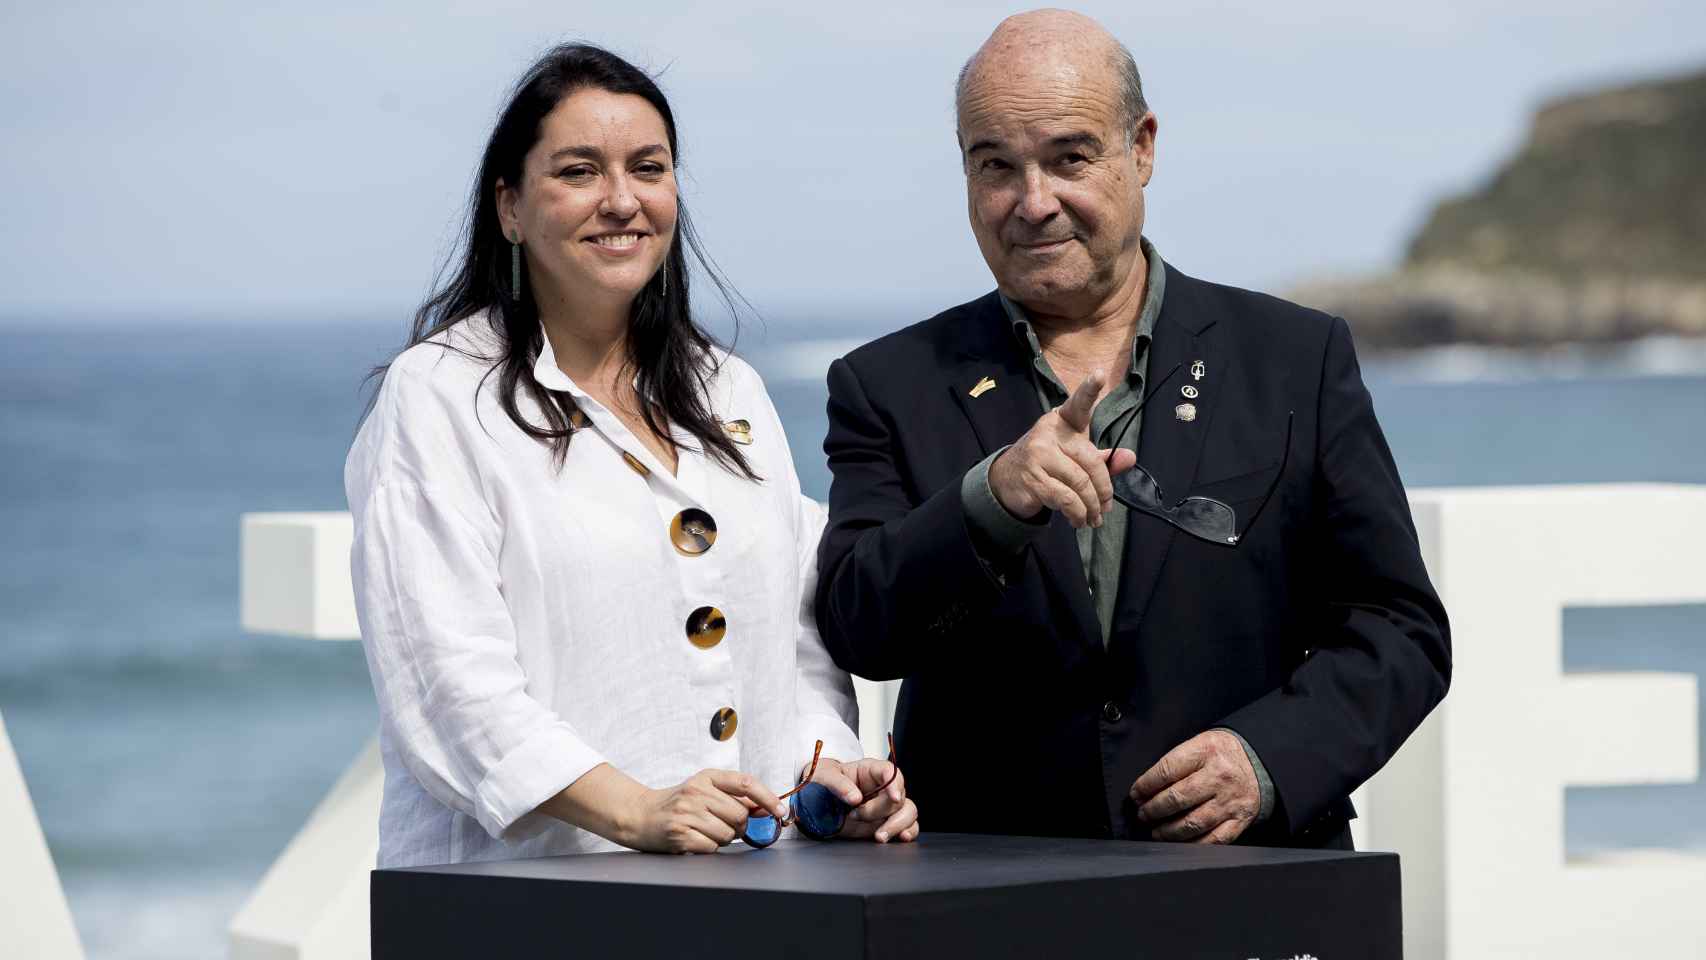 El actor Antonio Resines y su mujer, Ana Pérez-Lorente, en una imagen tomada en septiembre de 2019.